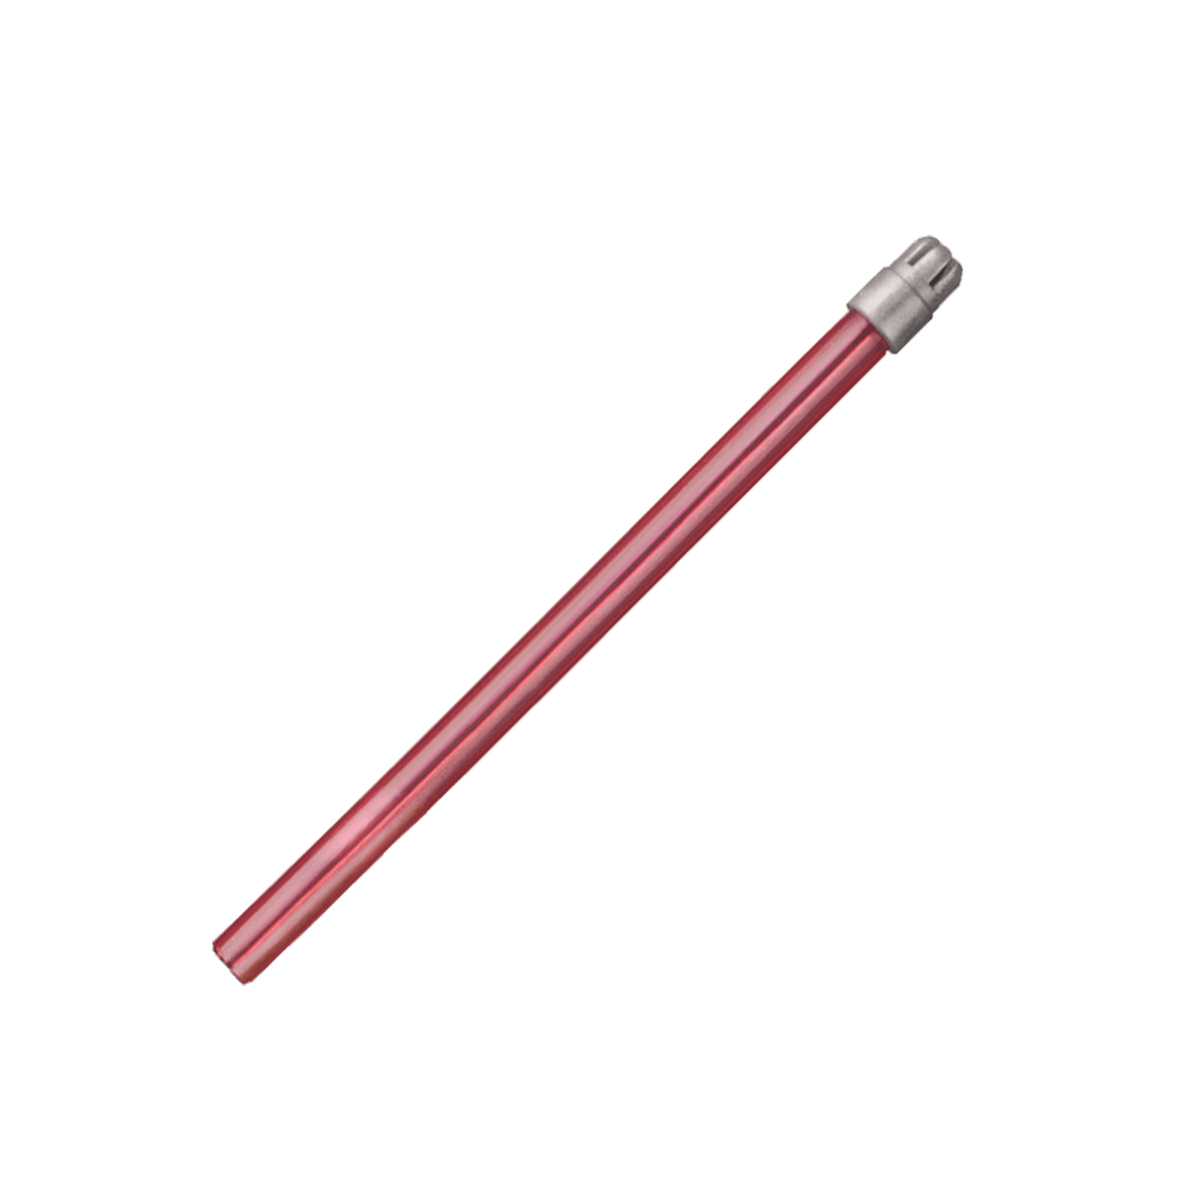 Monoart Speichelsauger 12,5 cm - Farbe: pink